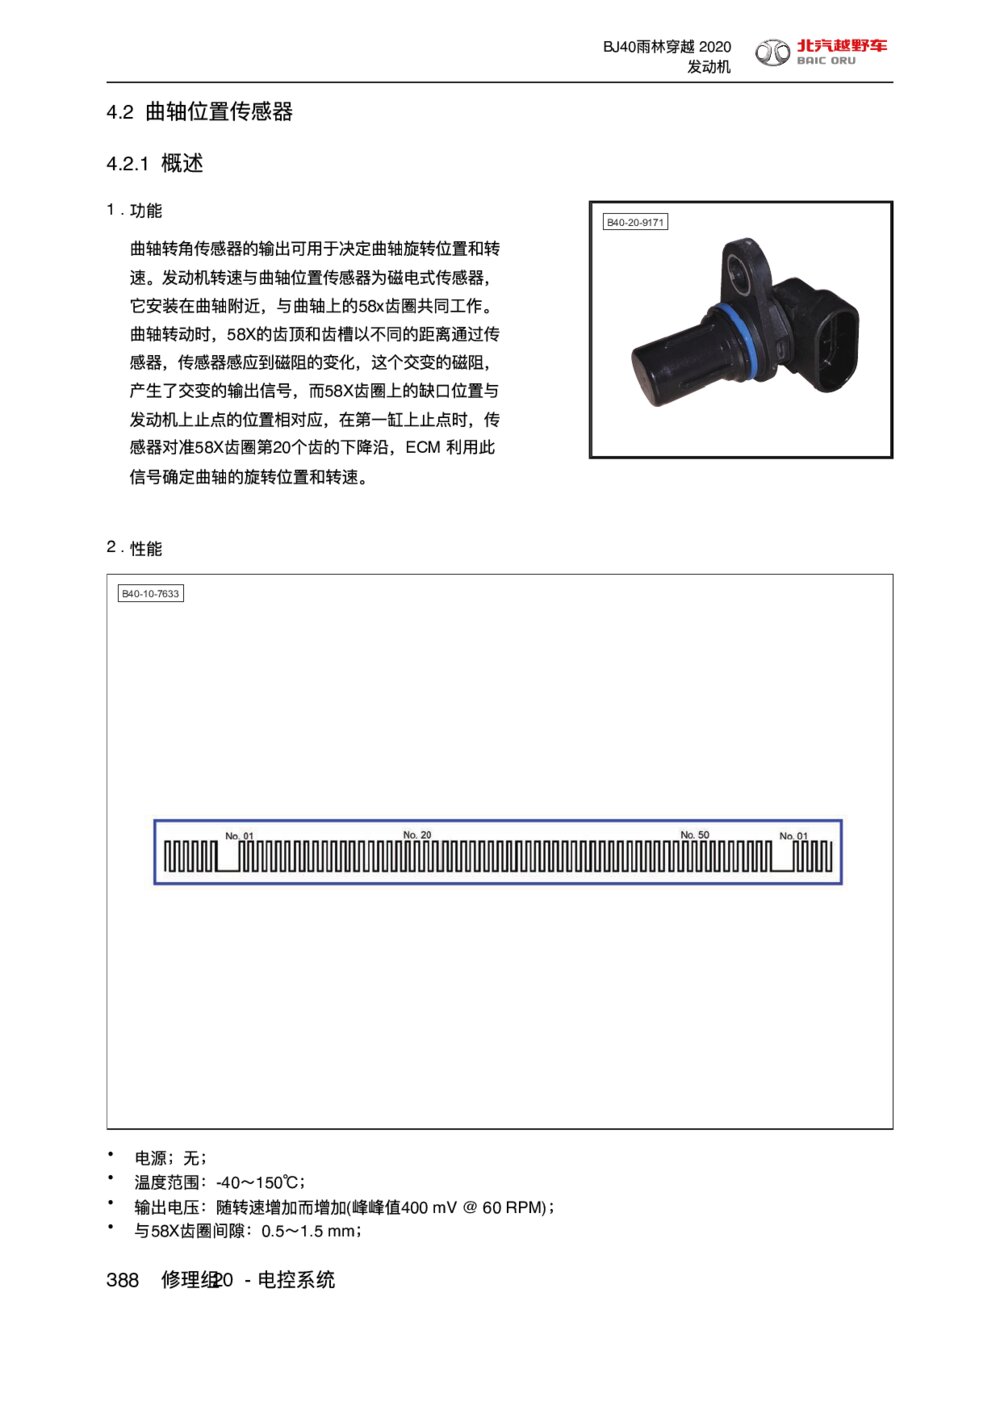 2020款北京BJ40雨林穿越版曲轴位置传感器手册1